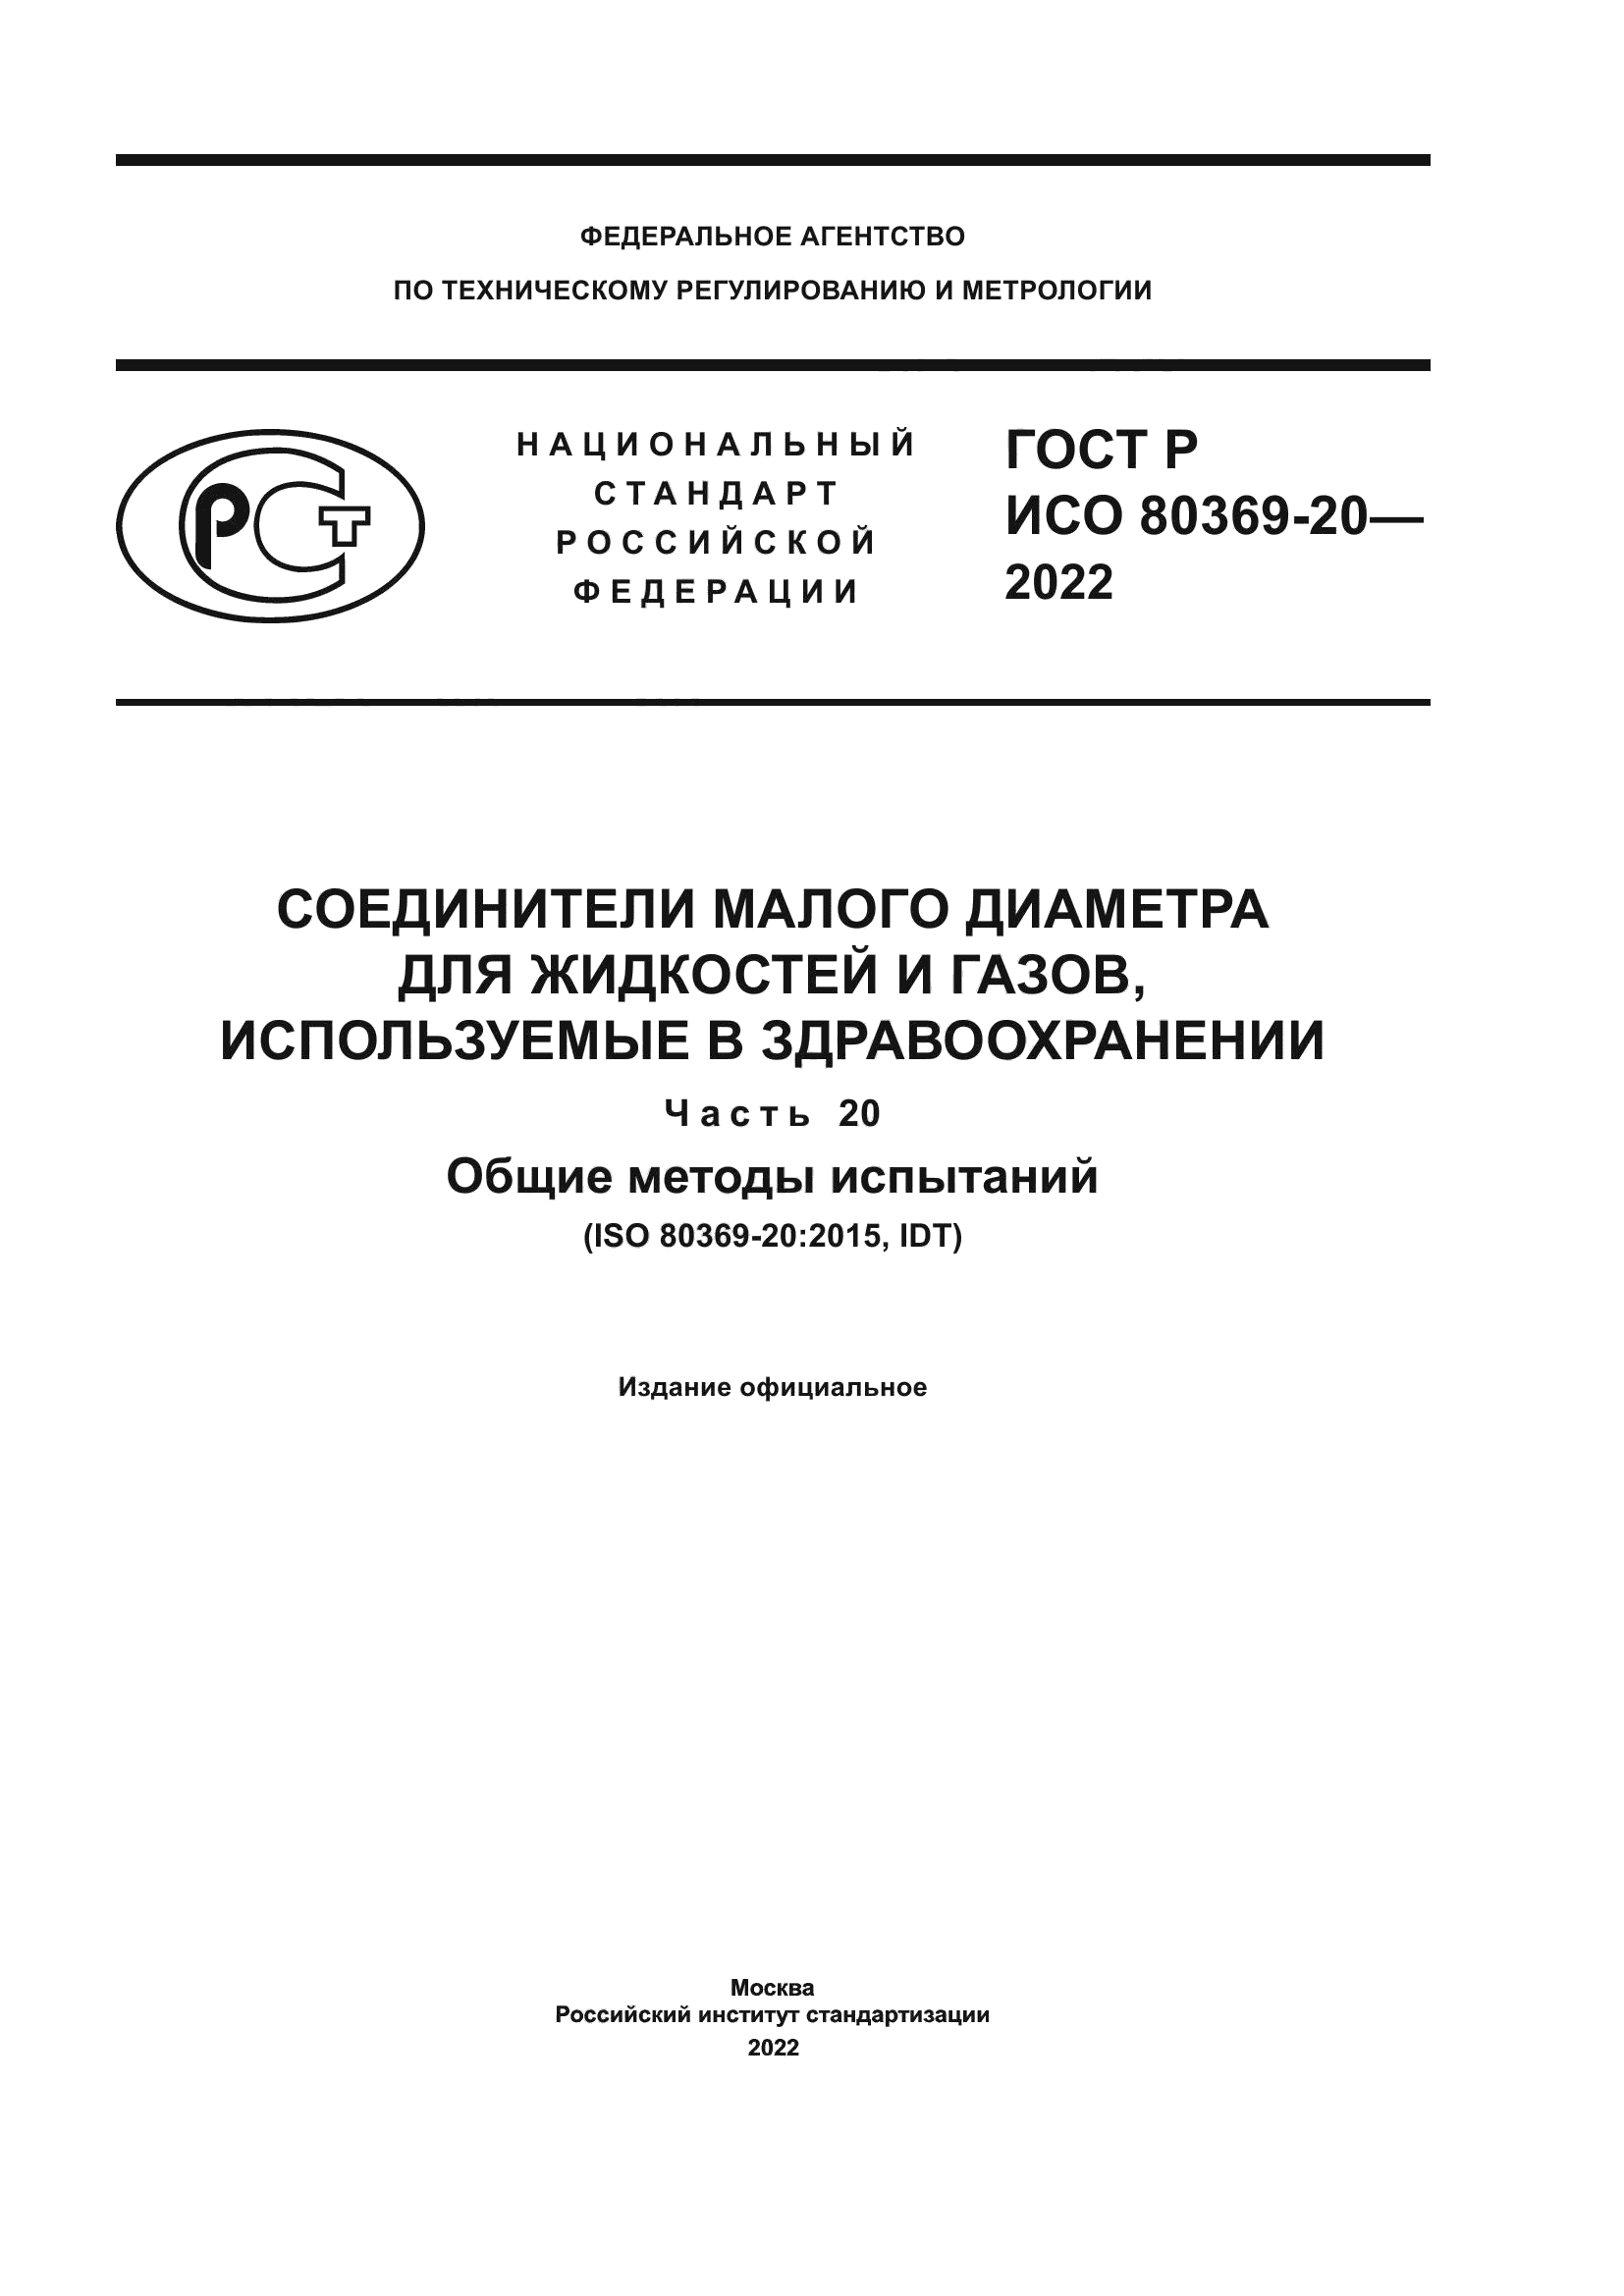 ГОСТ Р ИСО 80369-20-2022